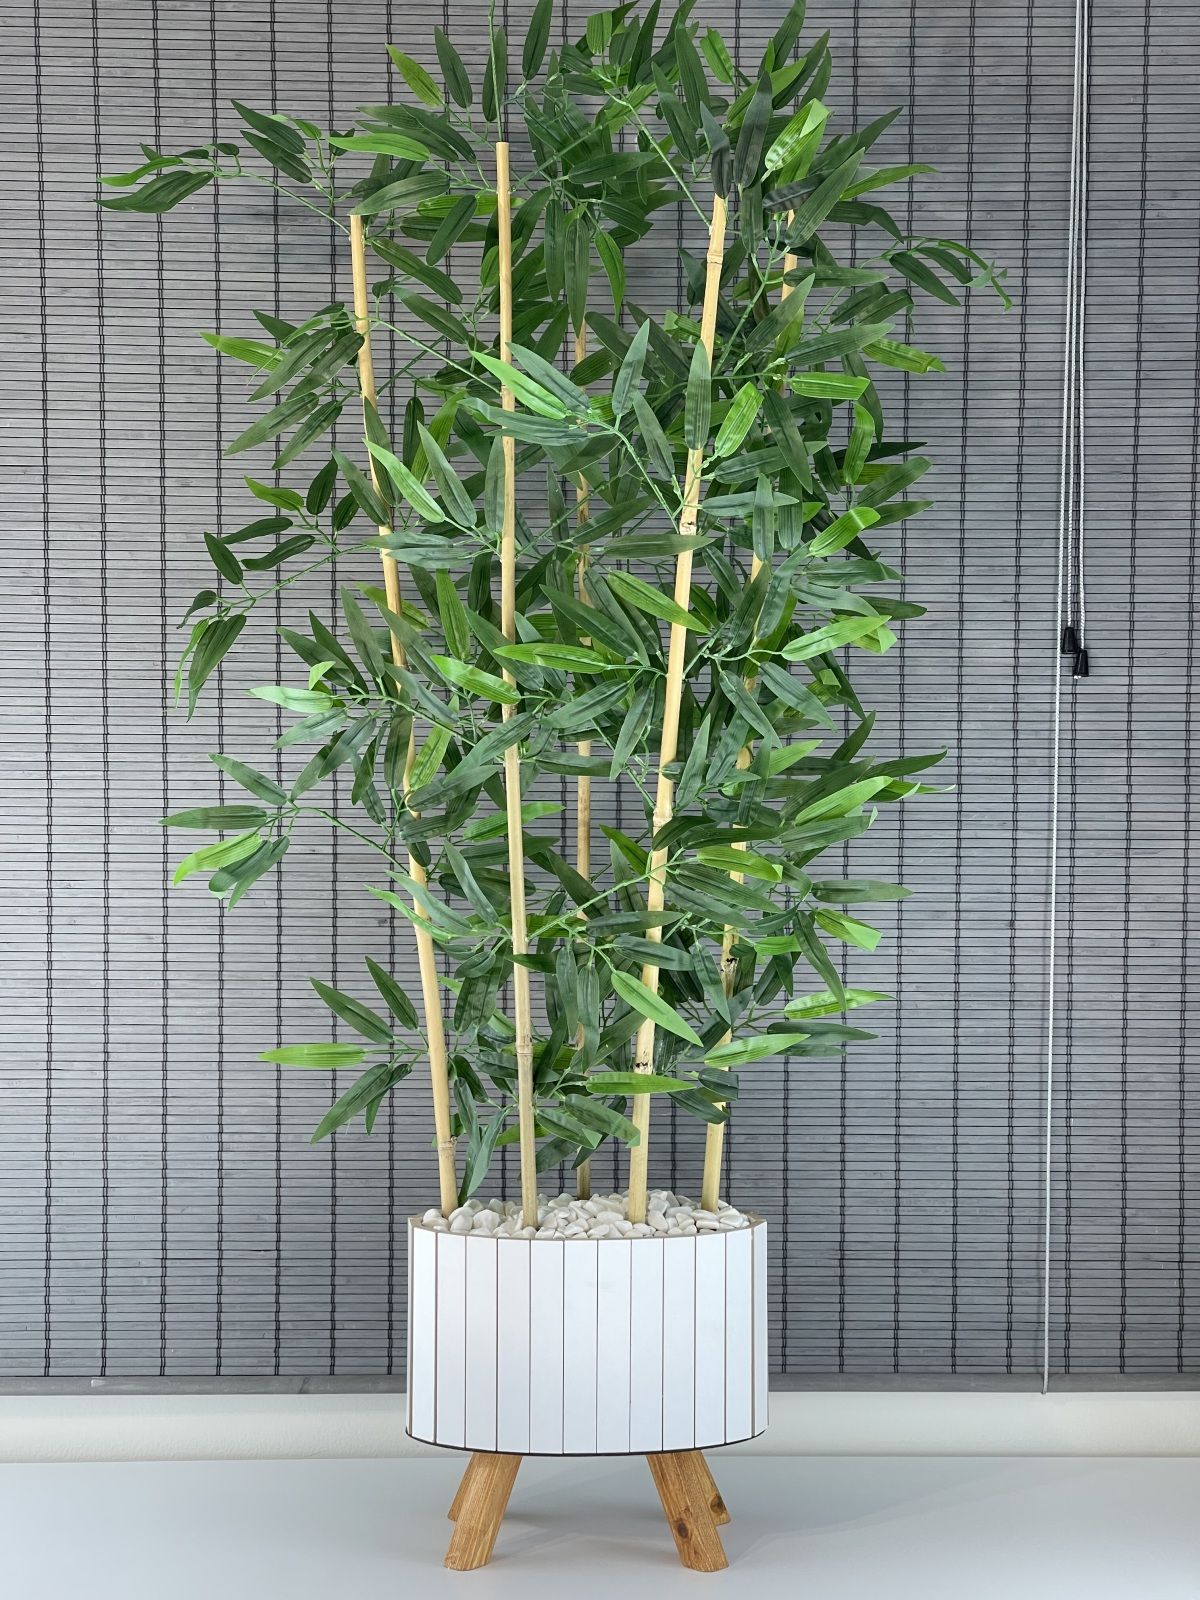 Bahçem Ahşap Saksılı Ayaklı Elips Model Yapay Yoğun Yapraklı Dekoratif Bambu Ağacı 115cm 5 Gövde